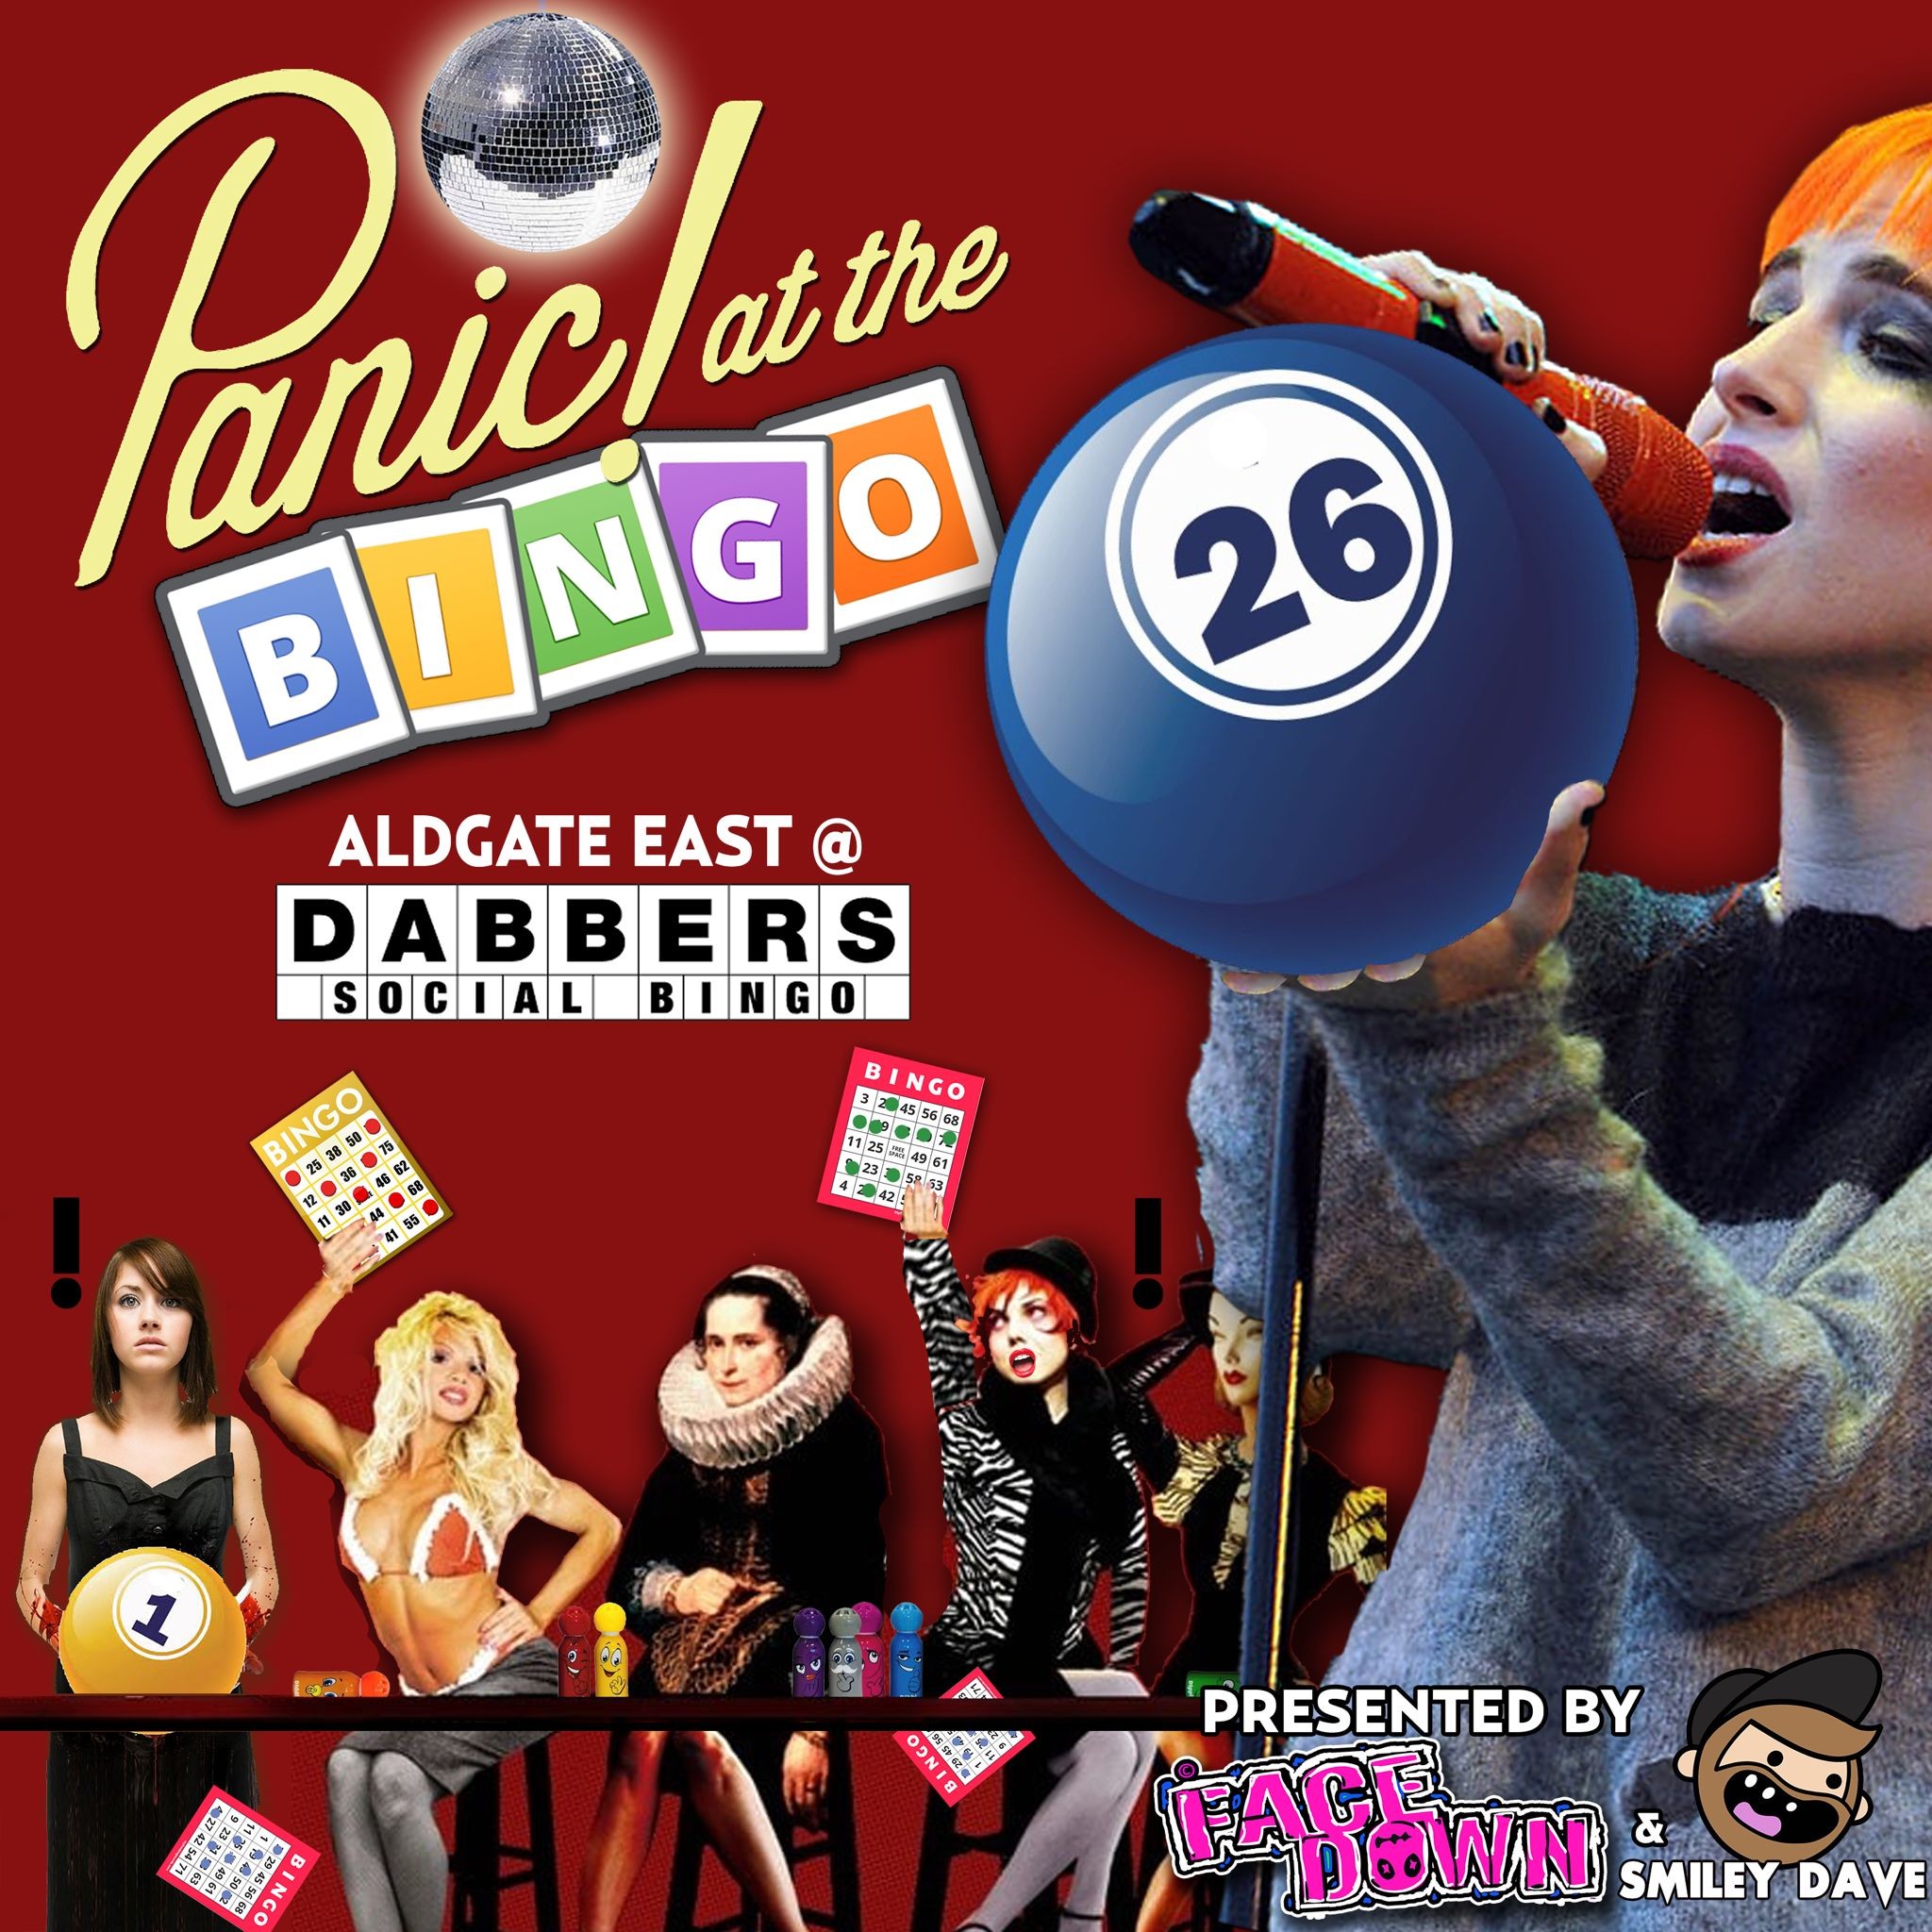 Panic! at the Bingo